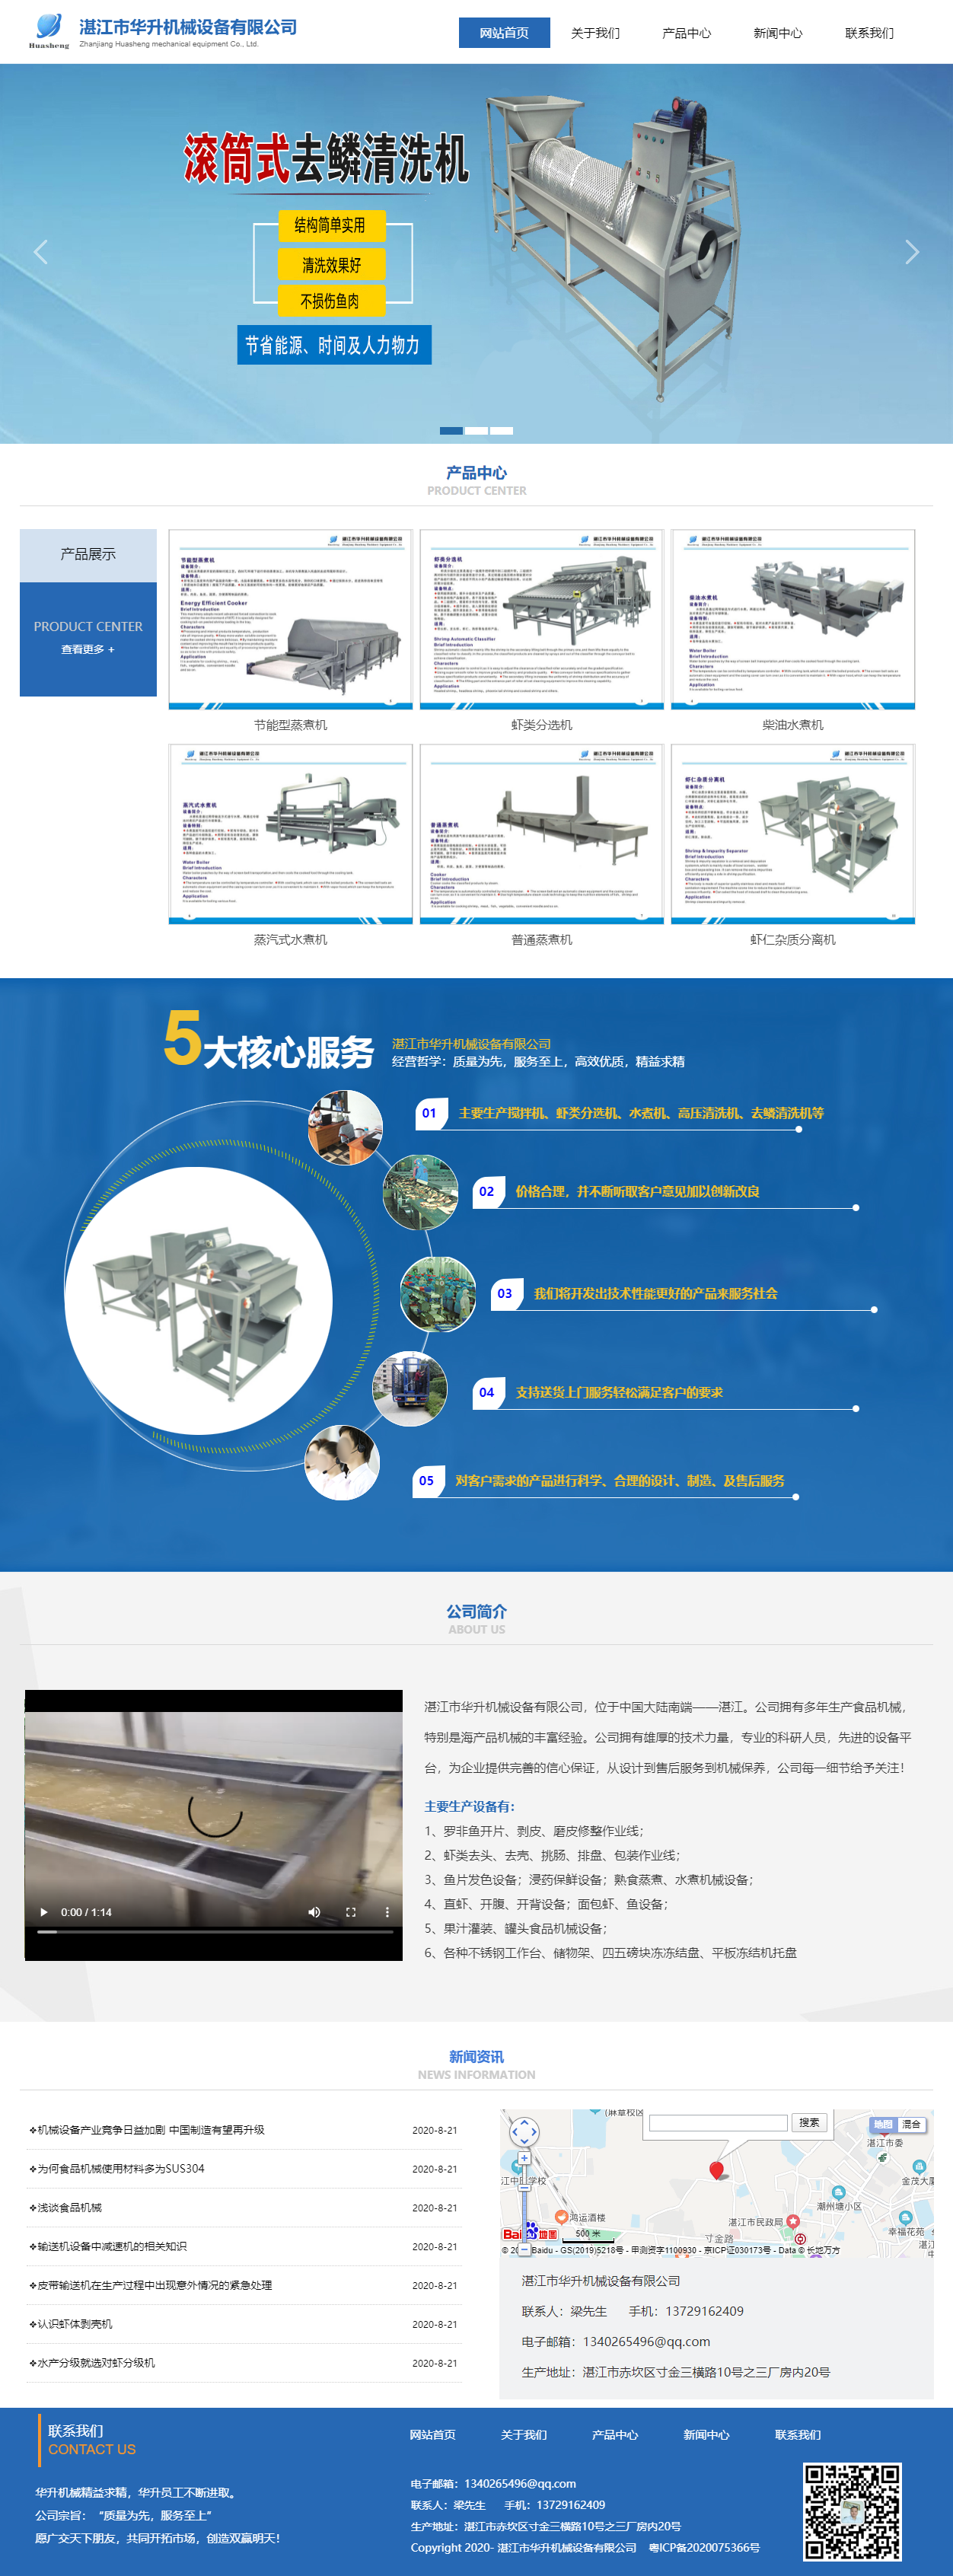 湛江市华升机械设备有限公司网站案例